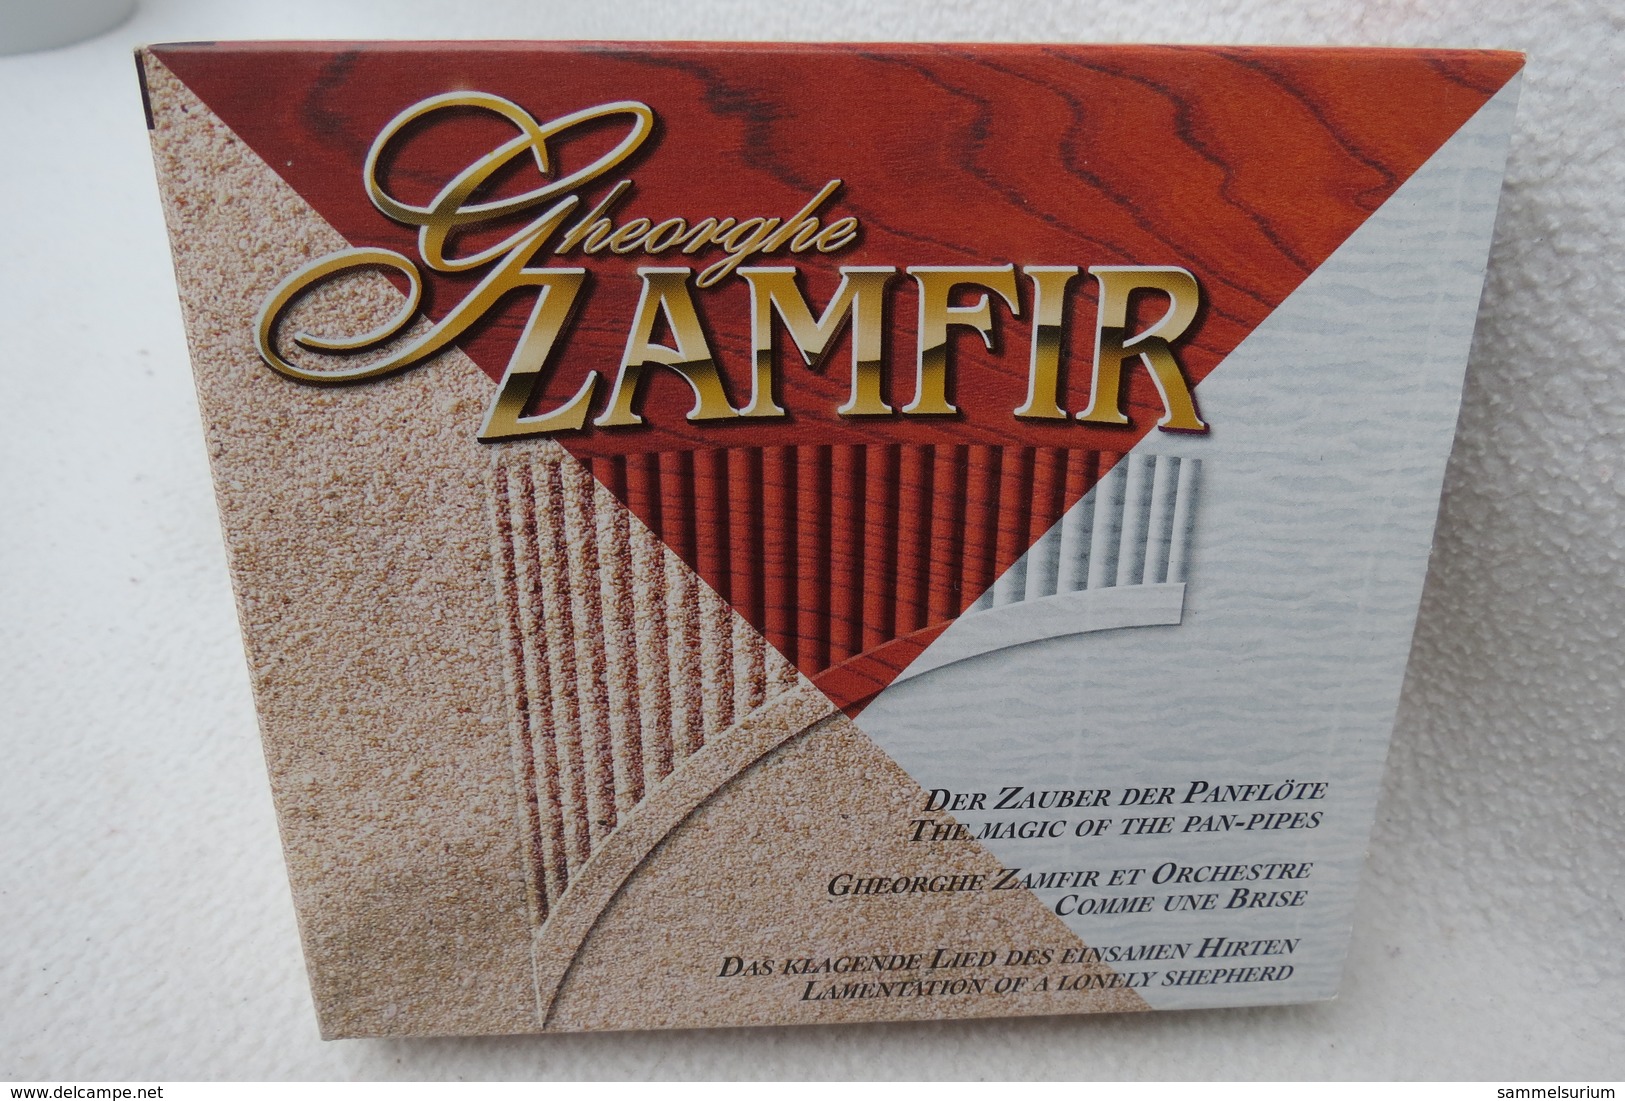 3 CD-Set "Gheorghe Zamfir" Der Zauber Der Panflöte - Compilations